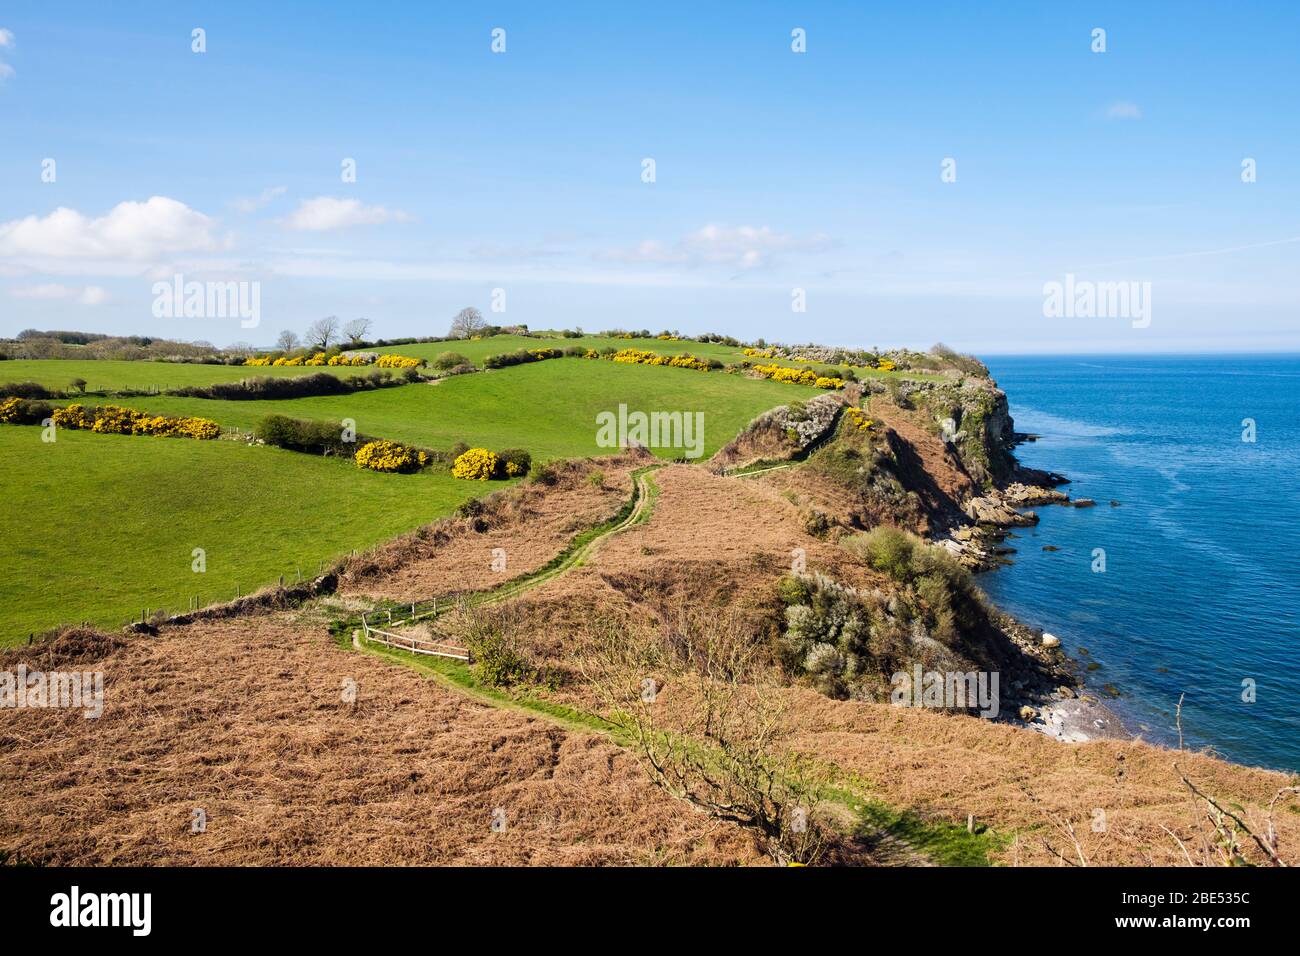 Vue sur le sentier côtier gallois à travers la campagne le long de la côte accidentée à l'ouest de Benllech, île d'Anglesey, Pays de Galles, Royaume-Uni, Grande-Bretagne Banque D'Images